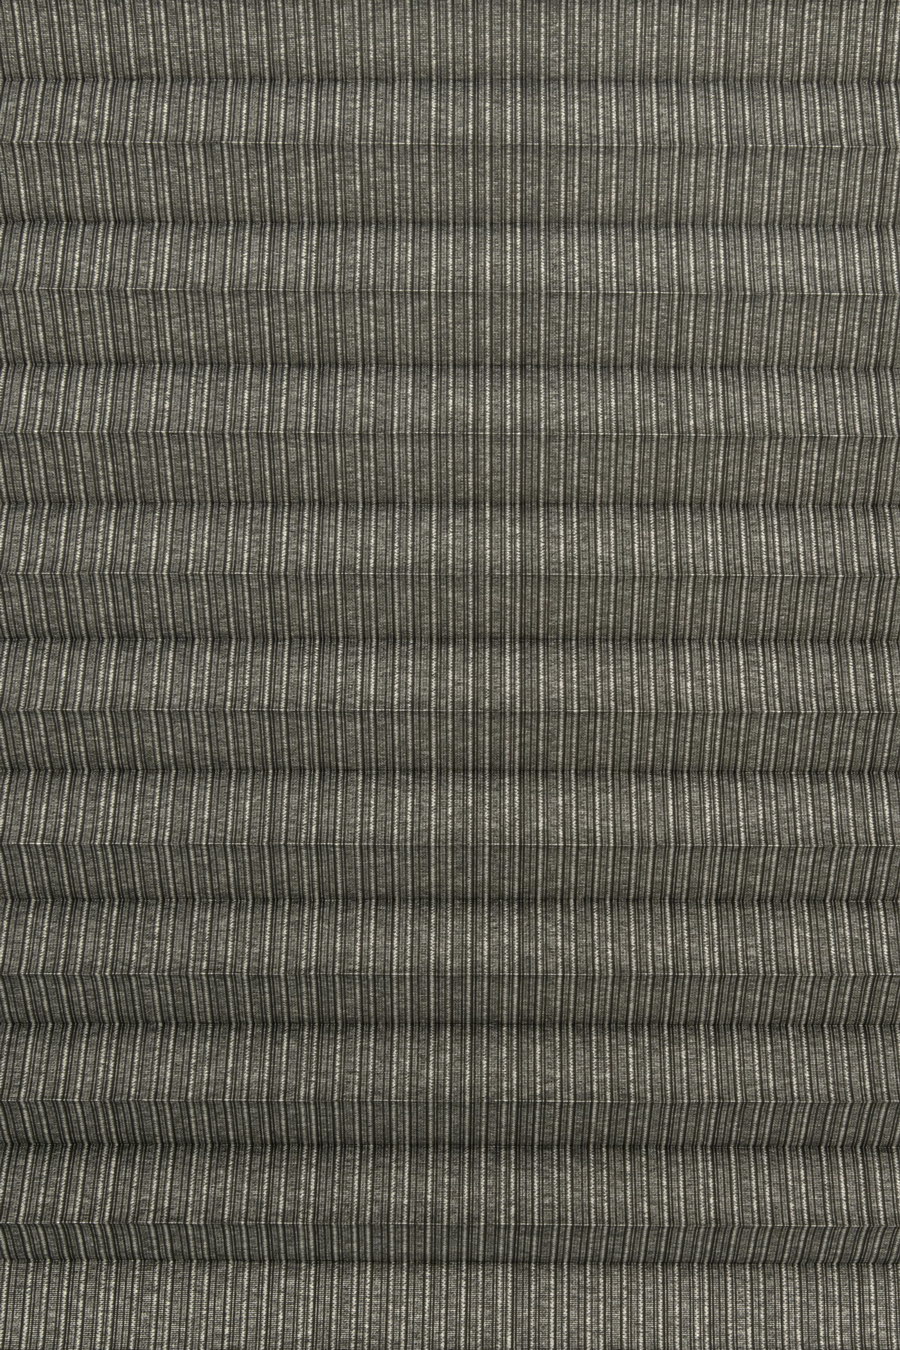 Ткань STYLE PEARL dark grey 4105 для штор плиссе